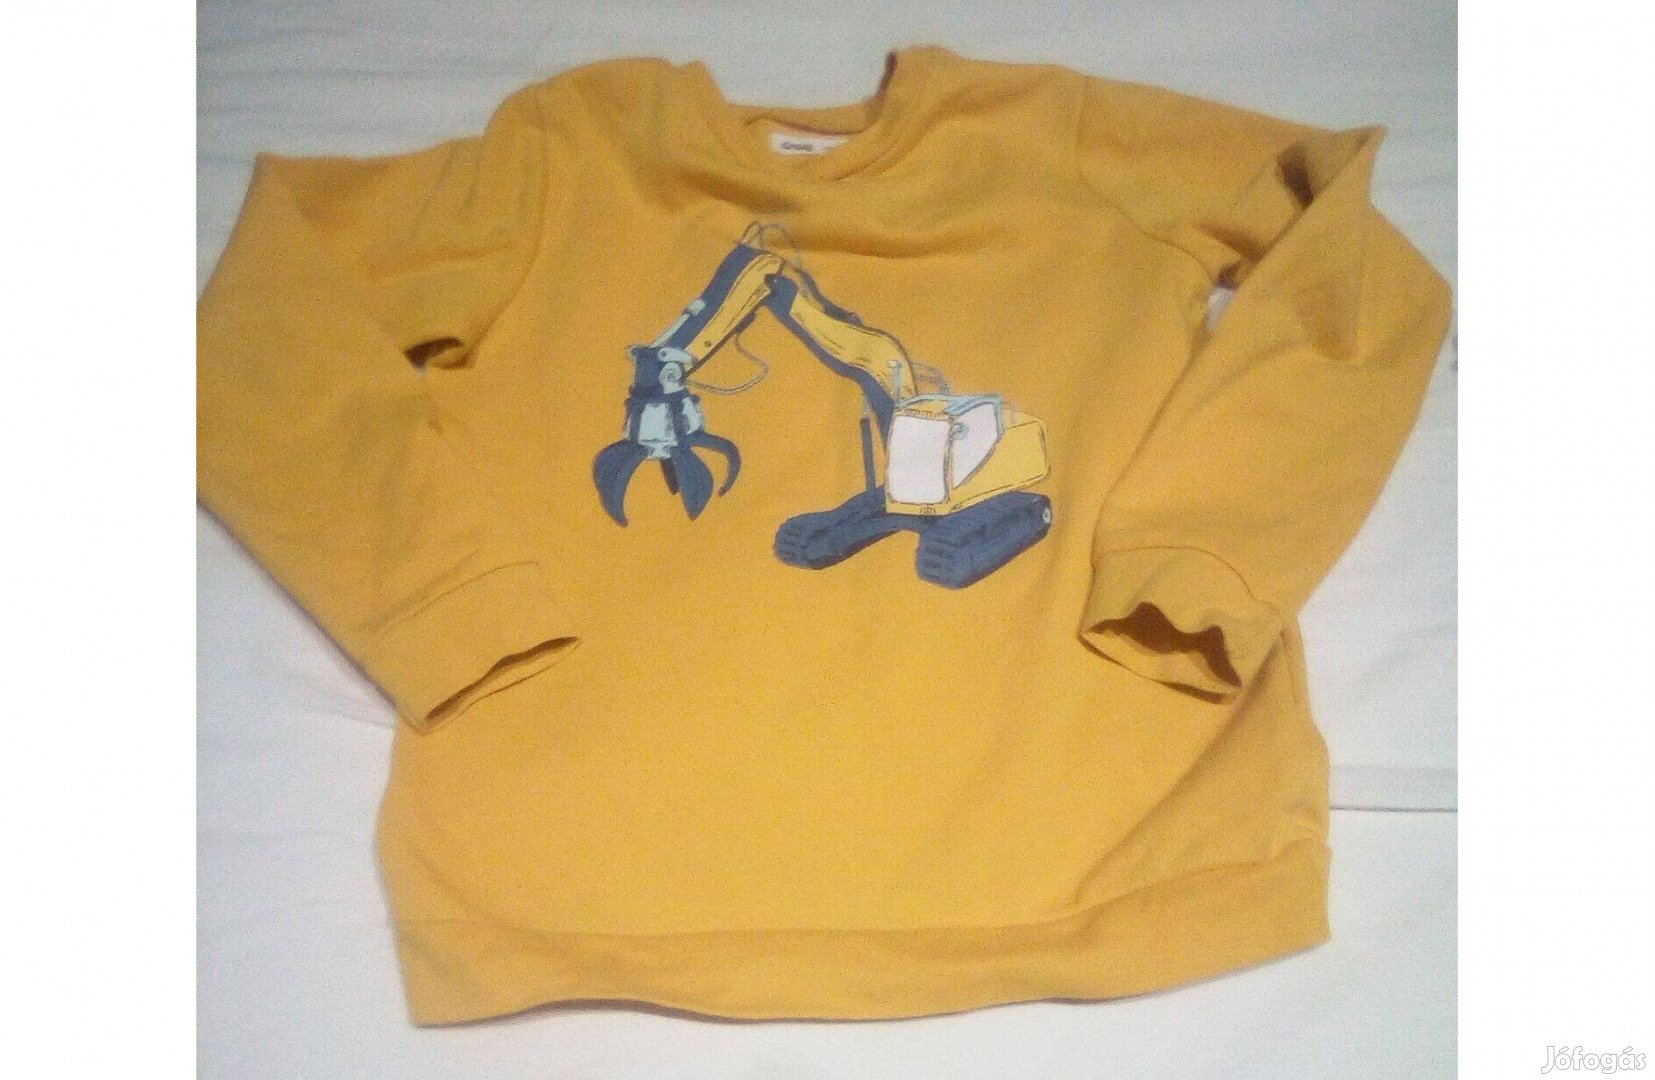 Sárga, munkagépes mintával ellátott fiú pulcsi